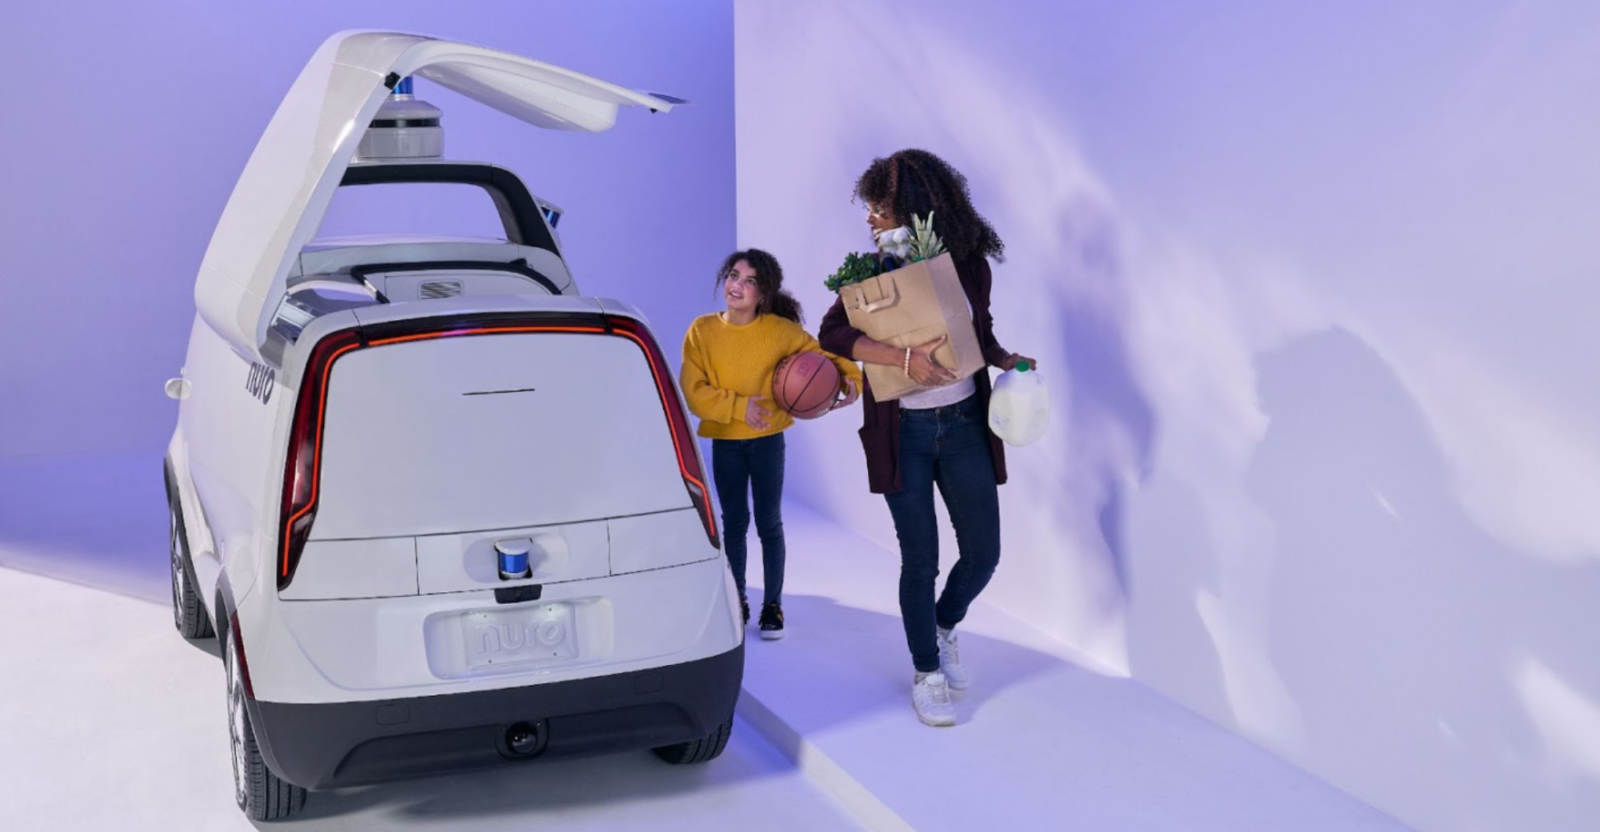 Nuro Autonomous Car 1 - Nuro unveils 3rd generation autonomous delivery vehicle with BYD